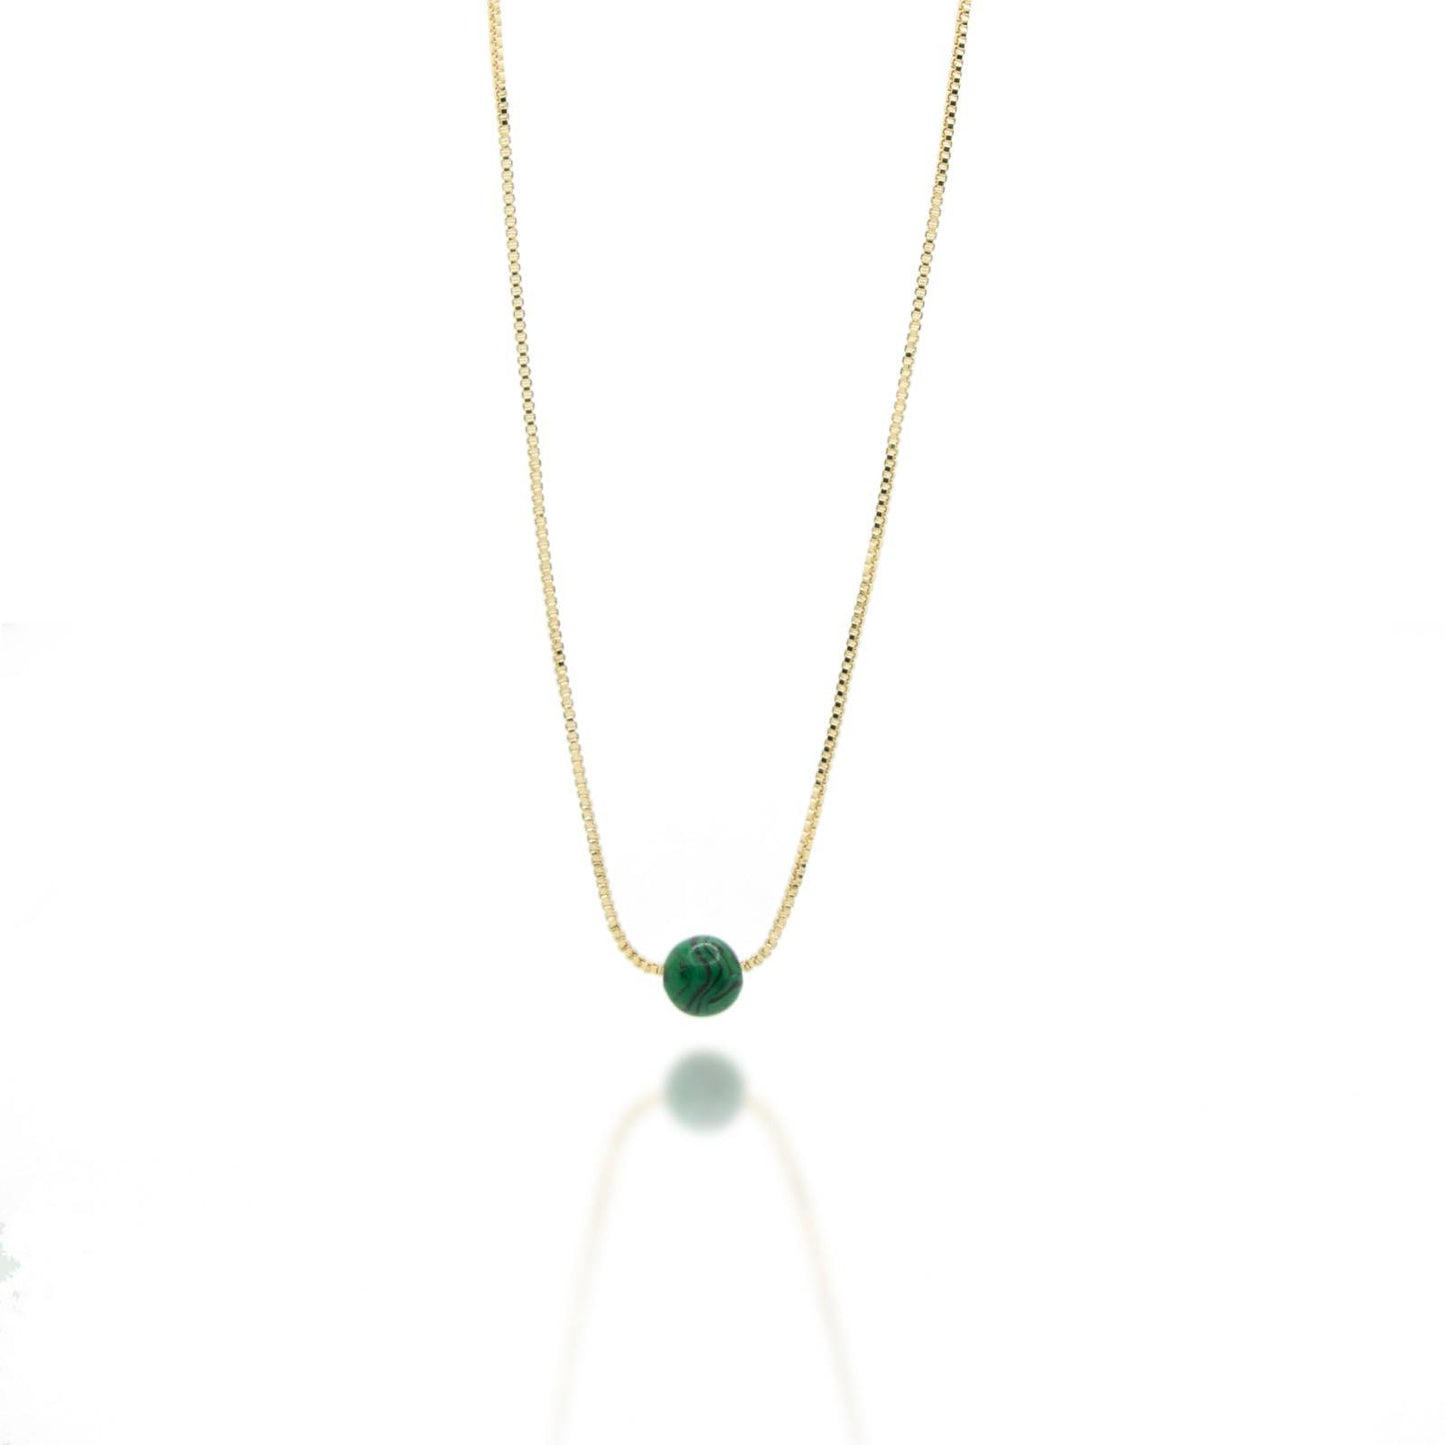 Green Malachite necklace